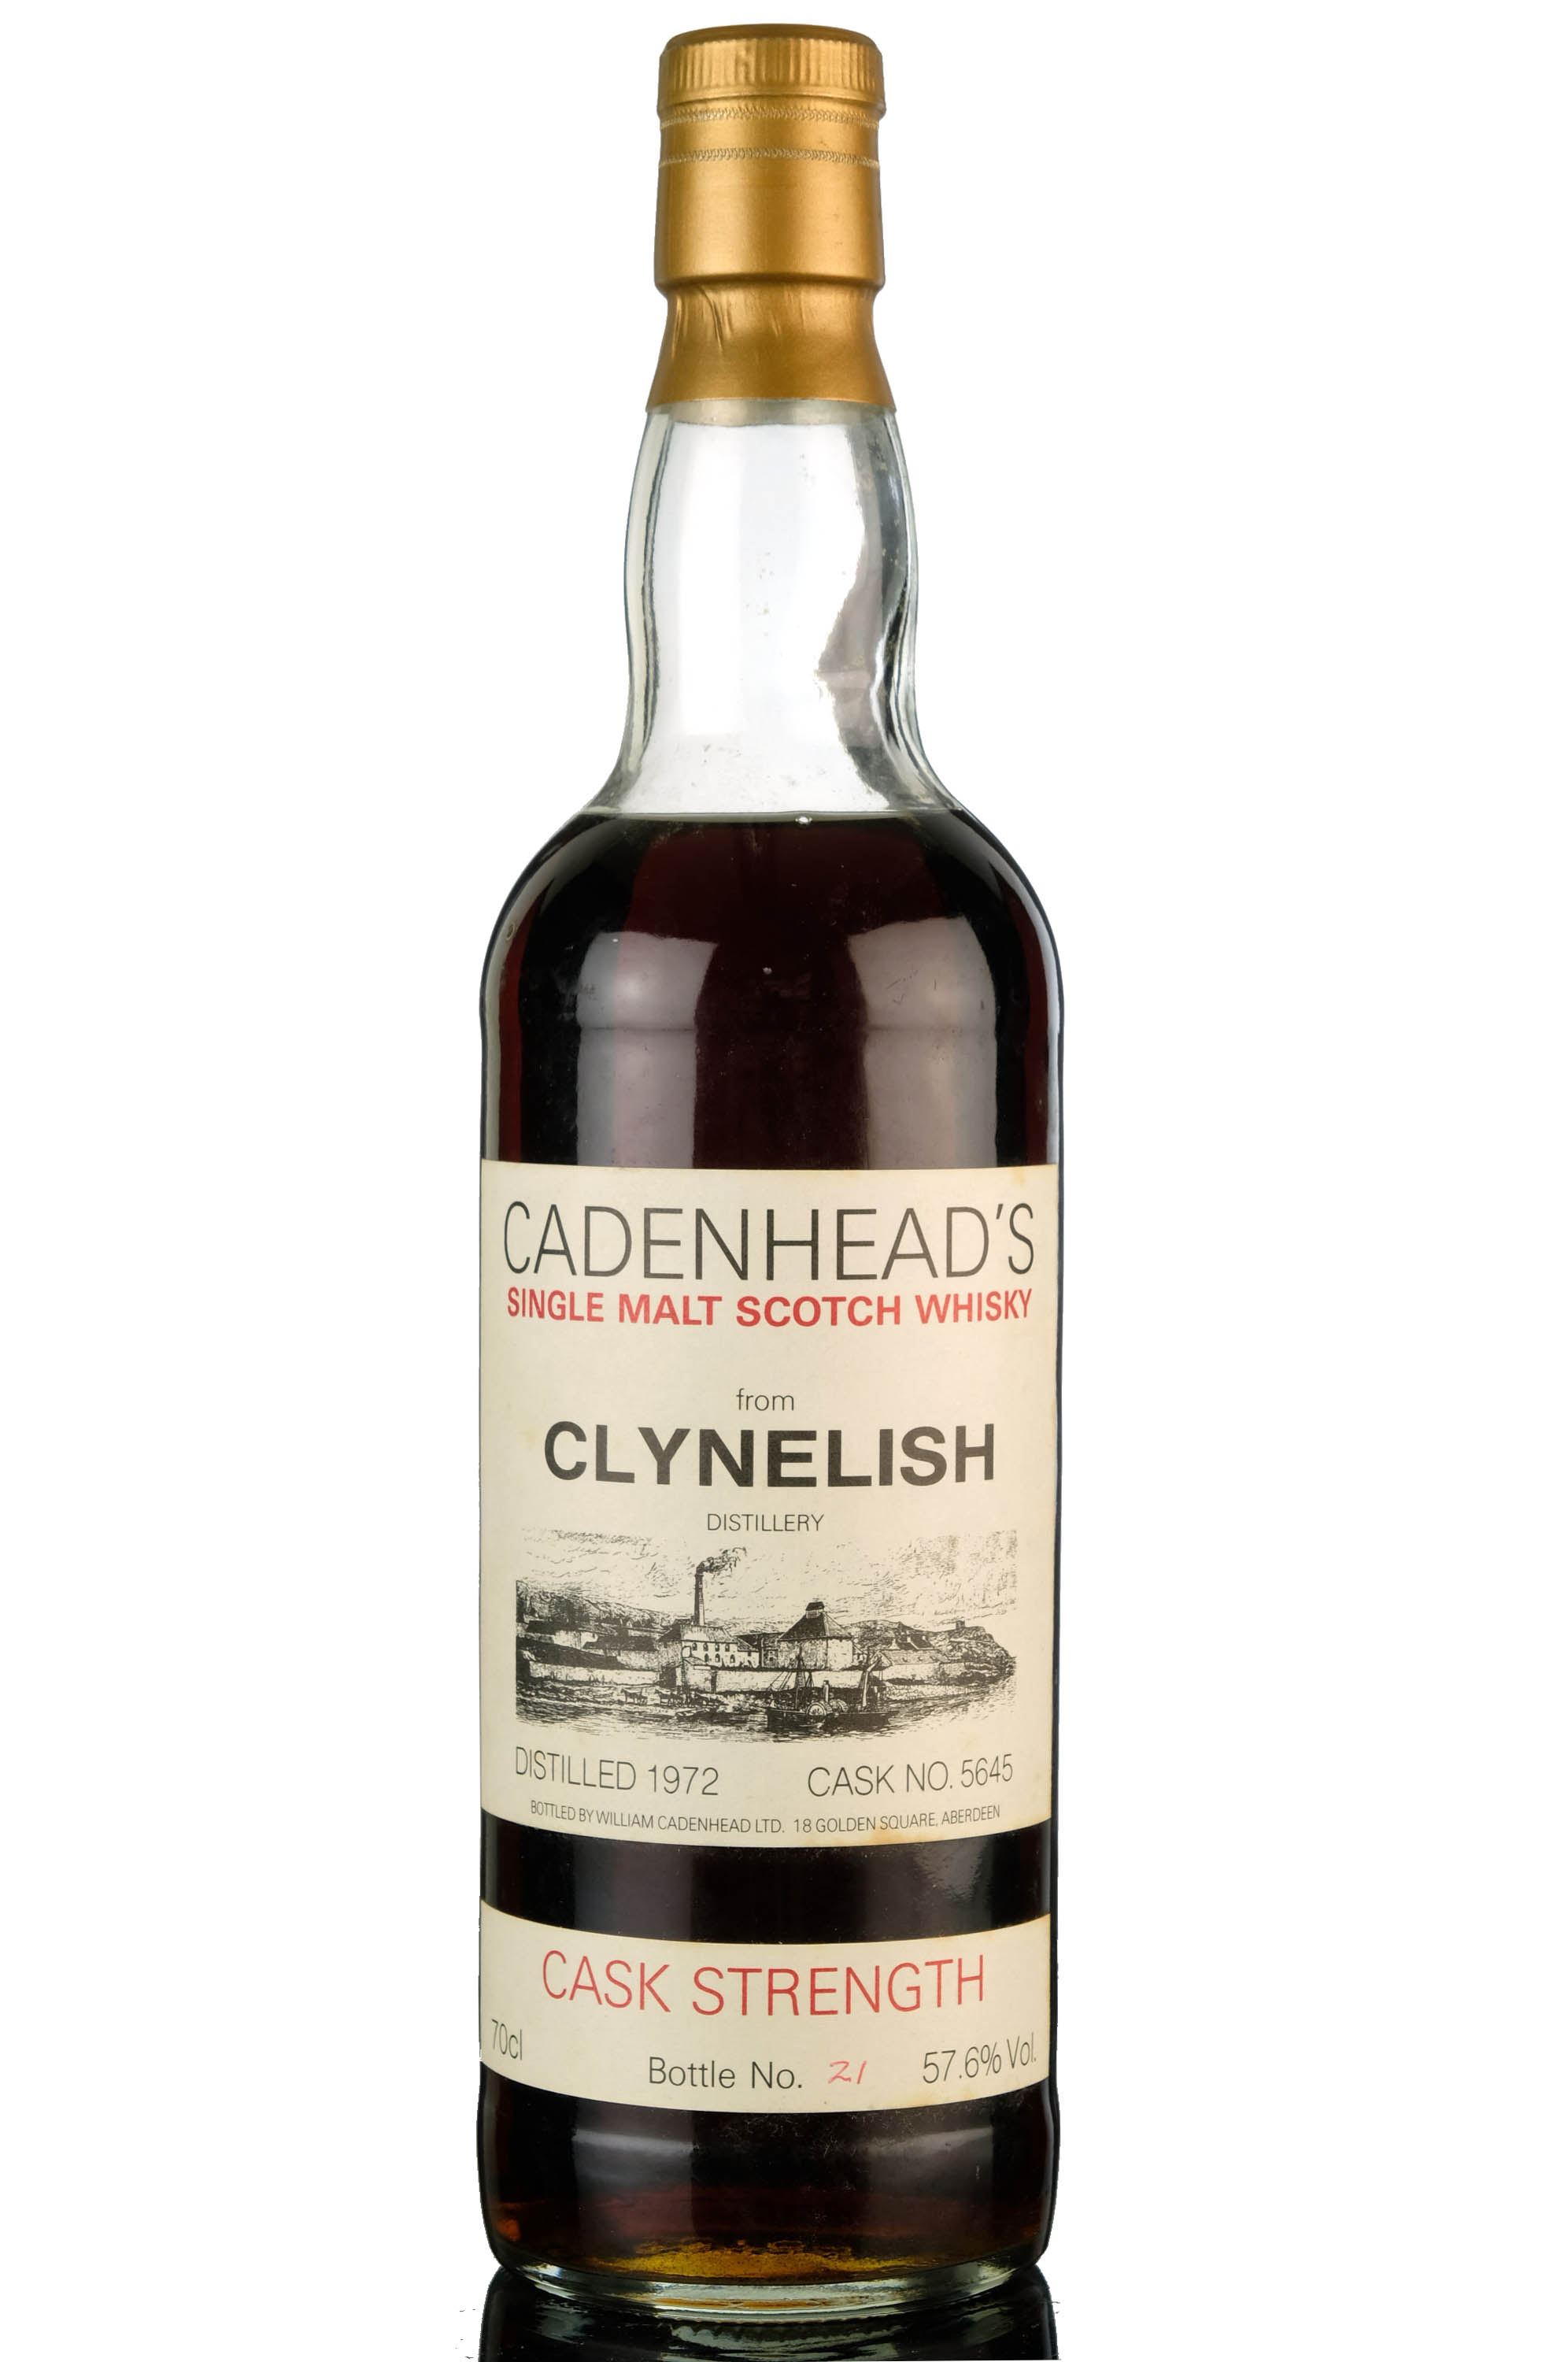 Clynelish 1972 - Cadenheads Cask Strength 5645